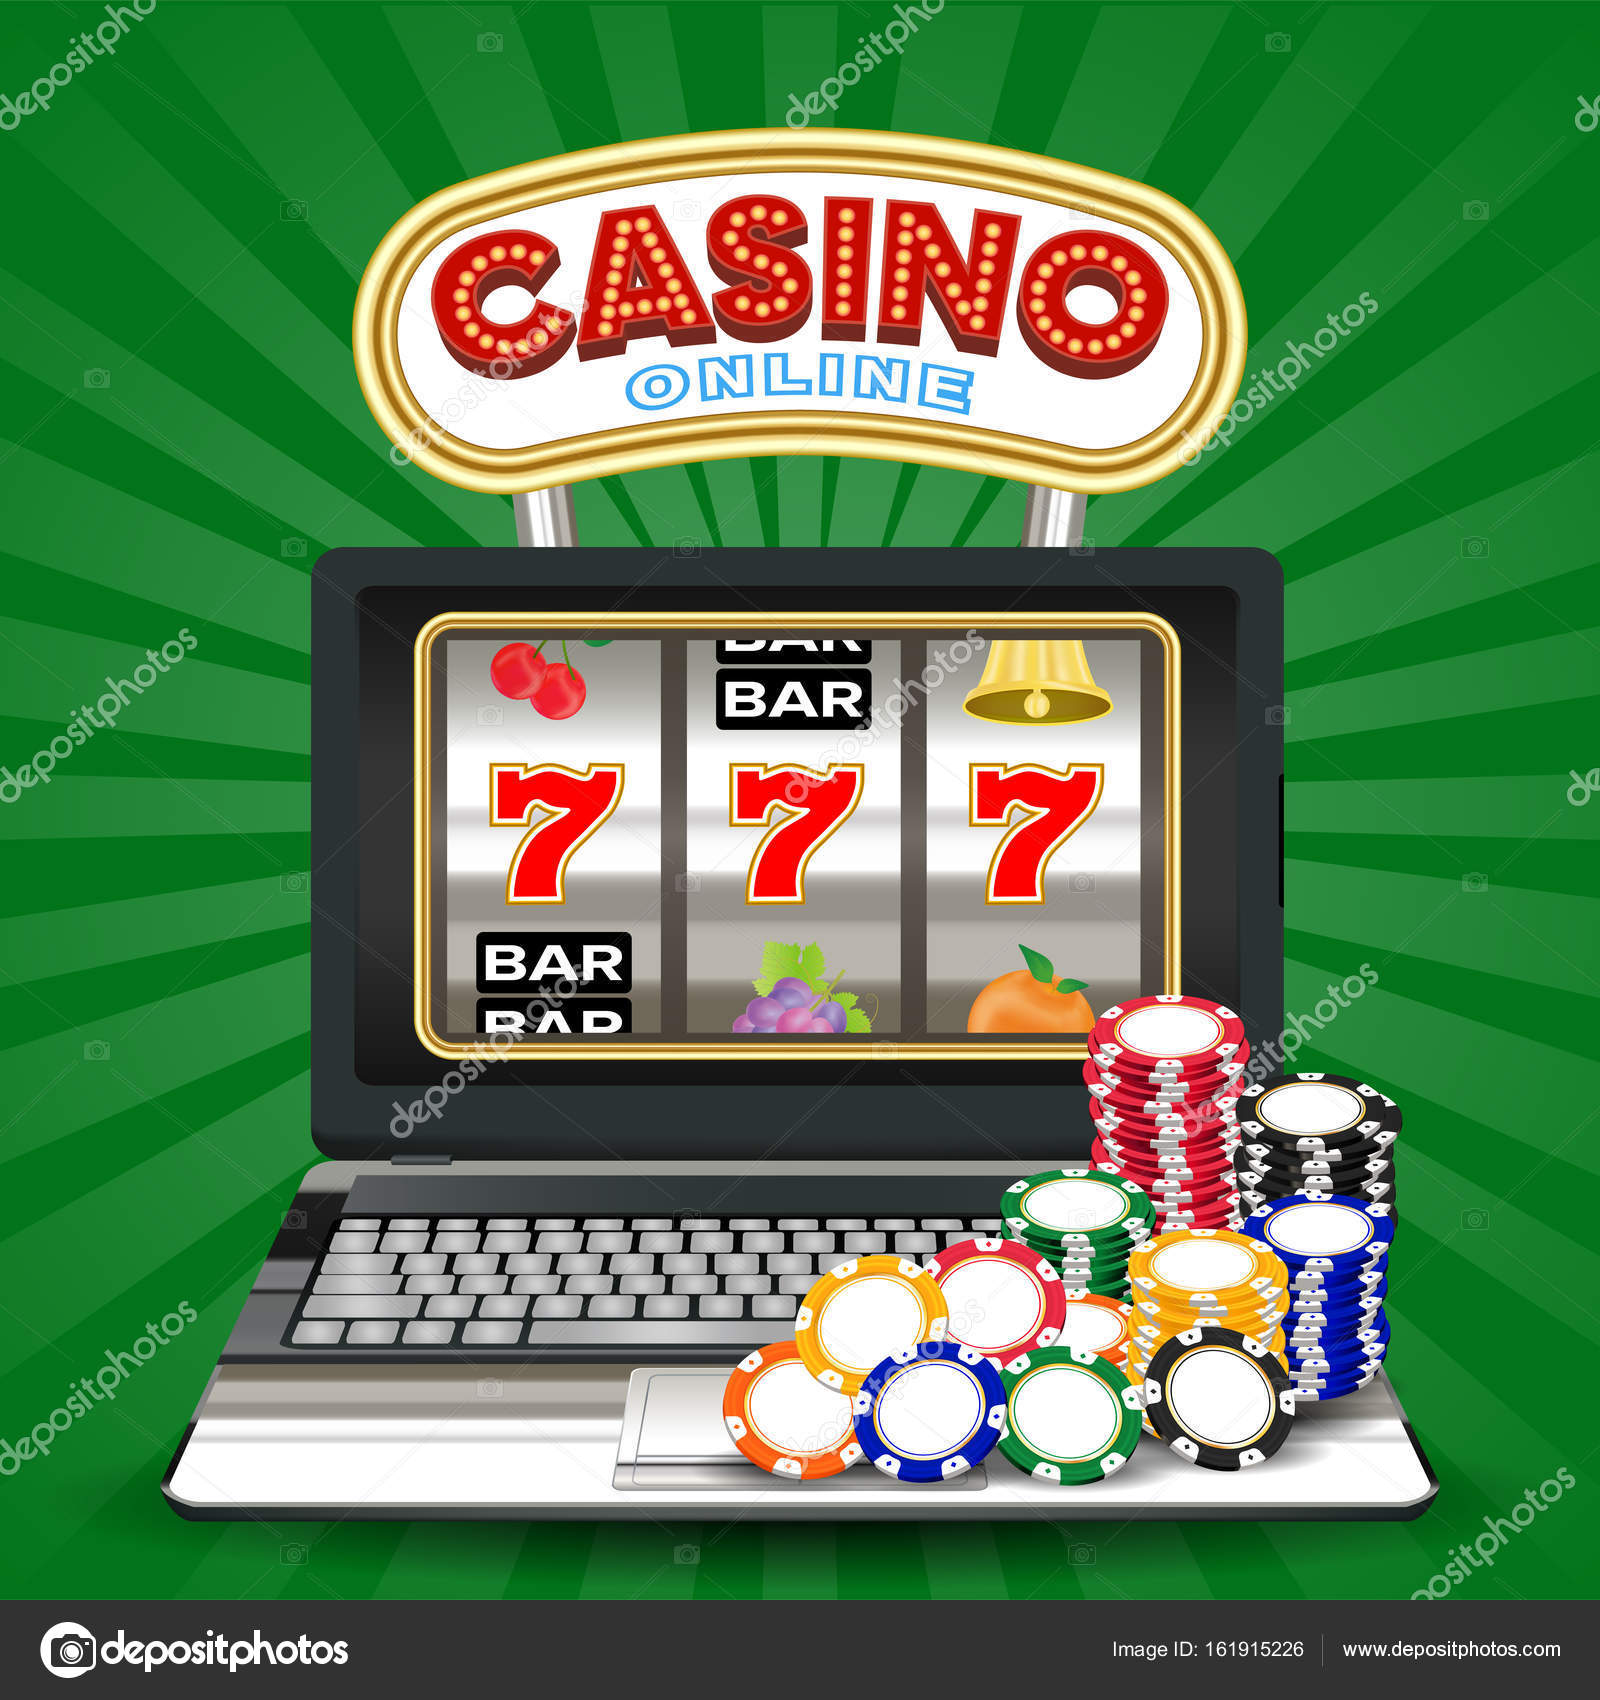 Вулкан игровые автоматы играть онлайн бесплатно казино 777